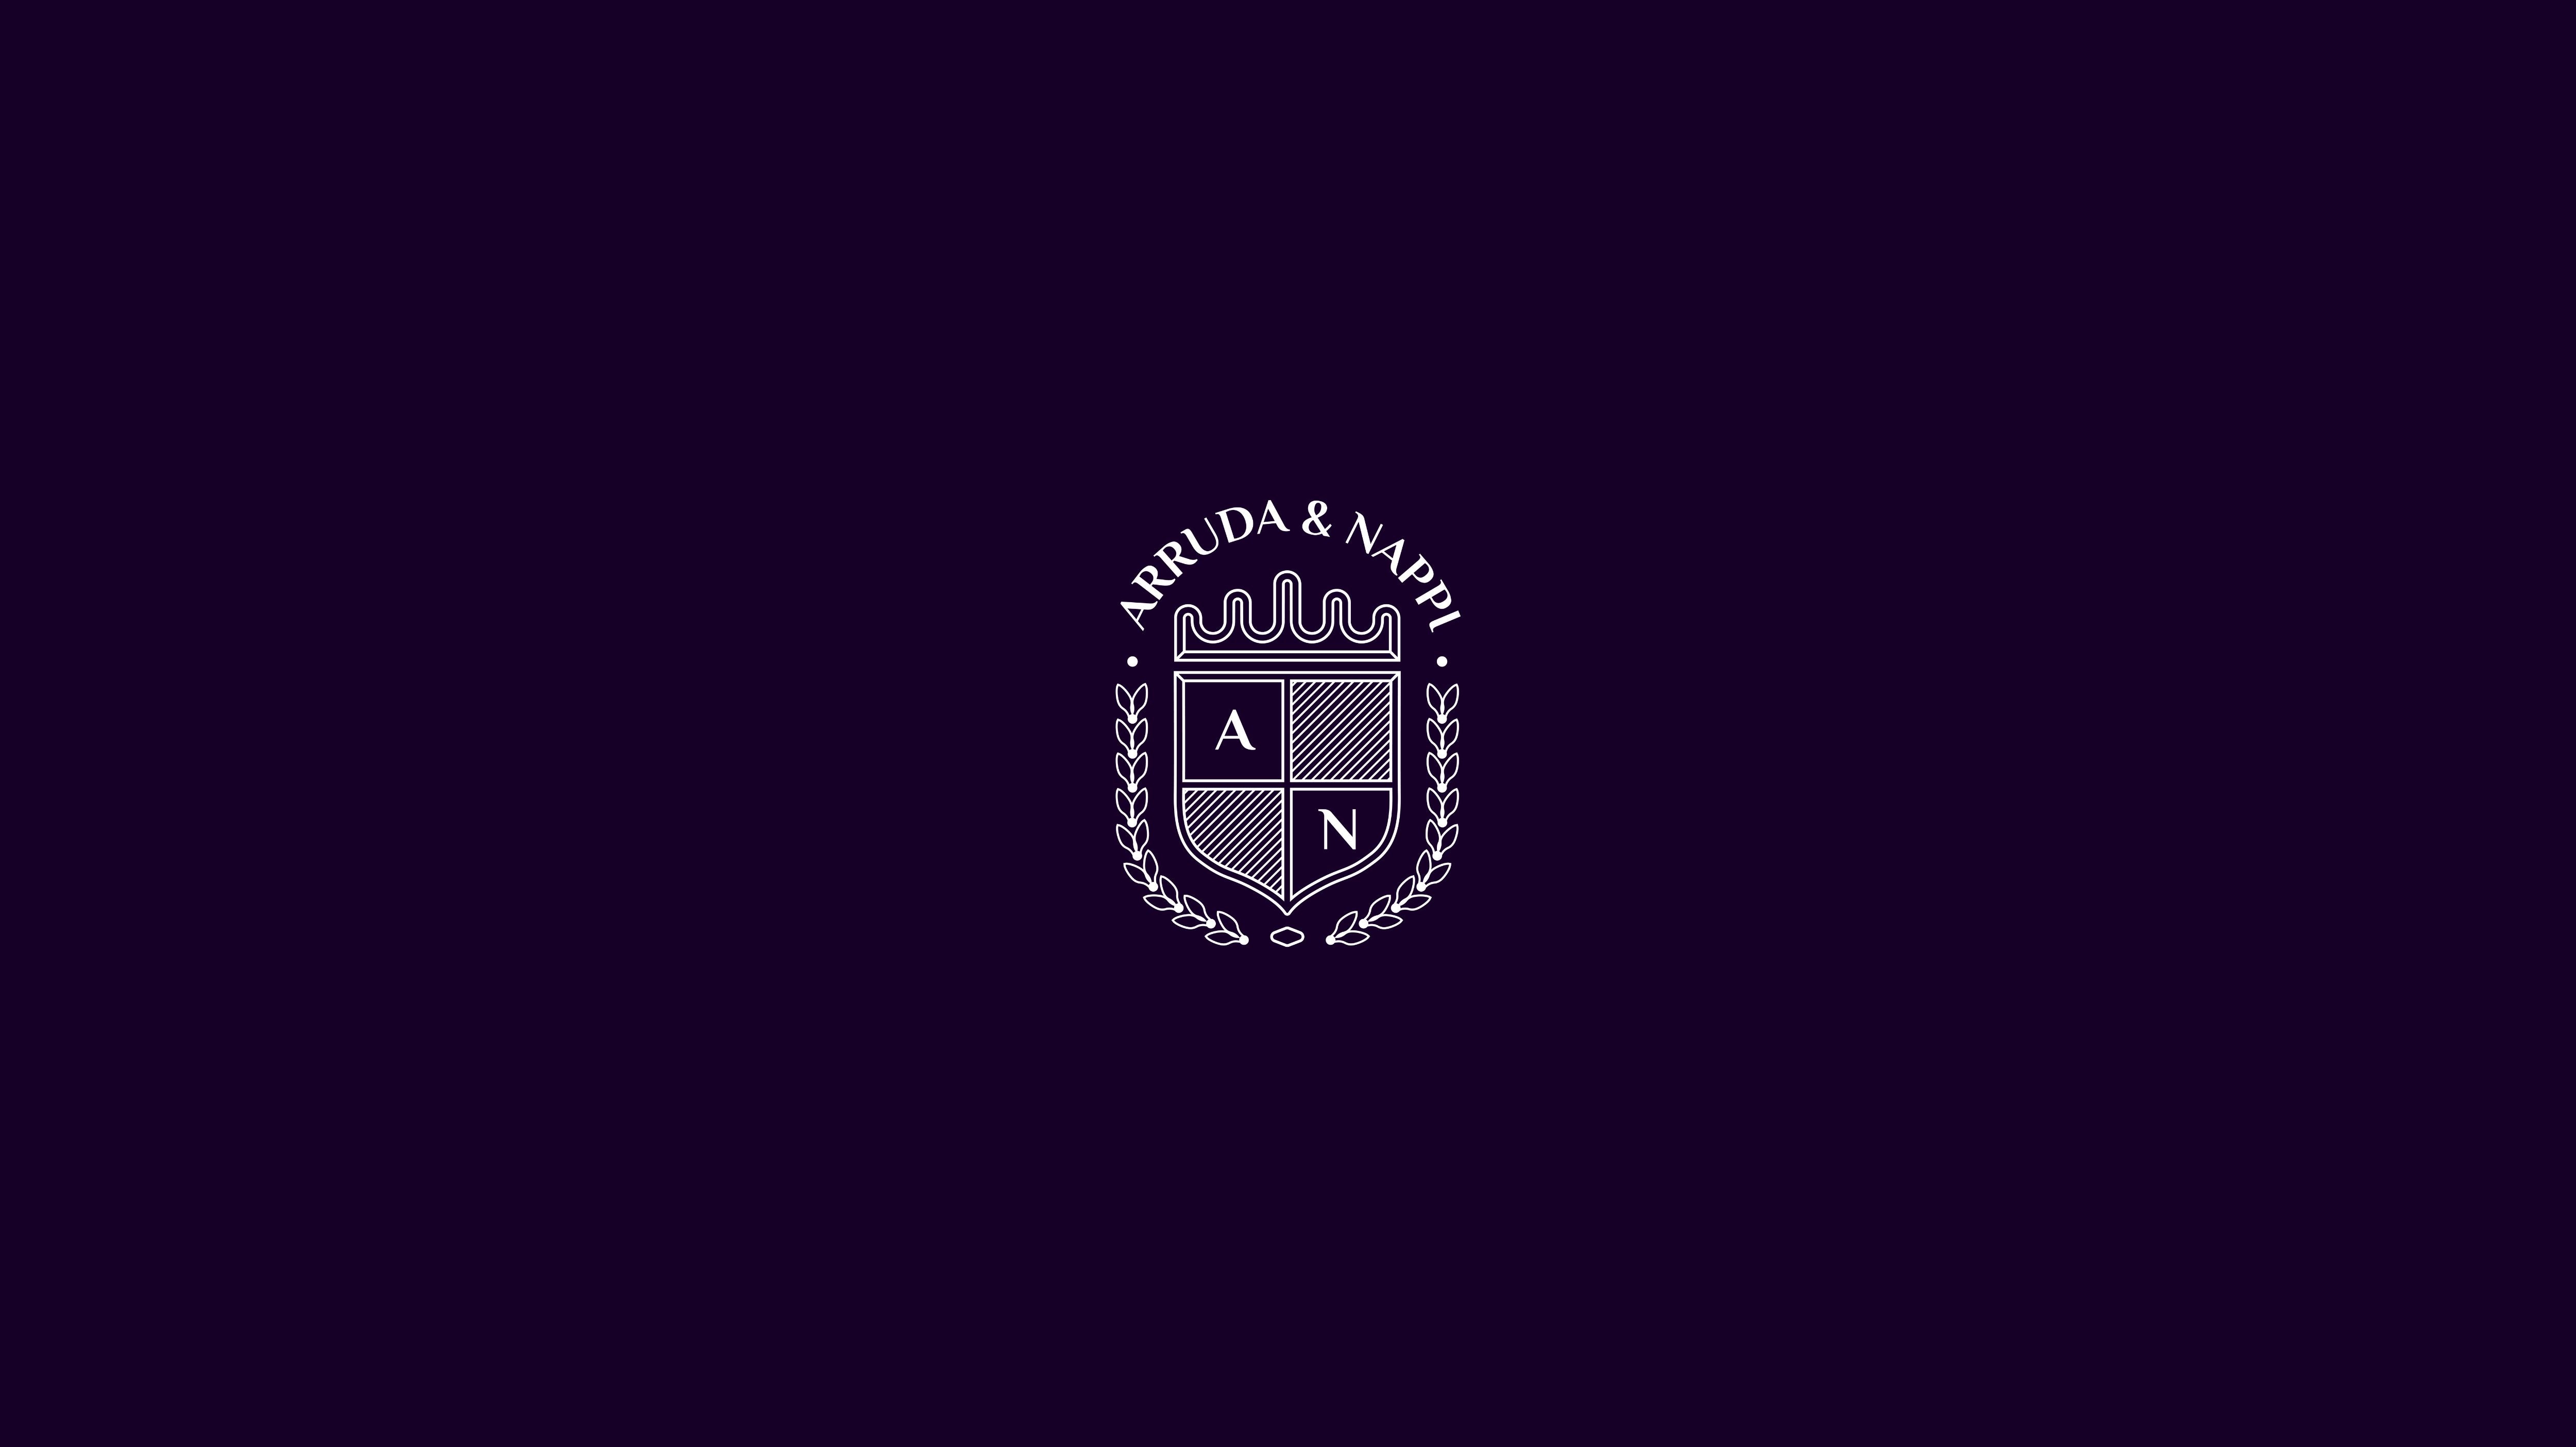 ARRUDA & NAPPI logo on purple background